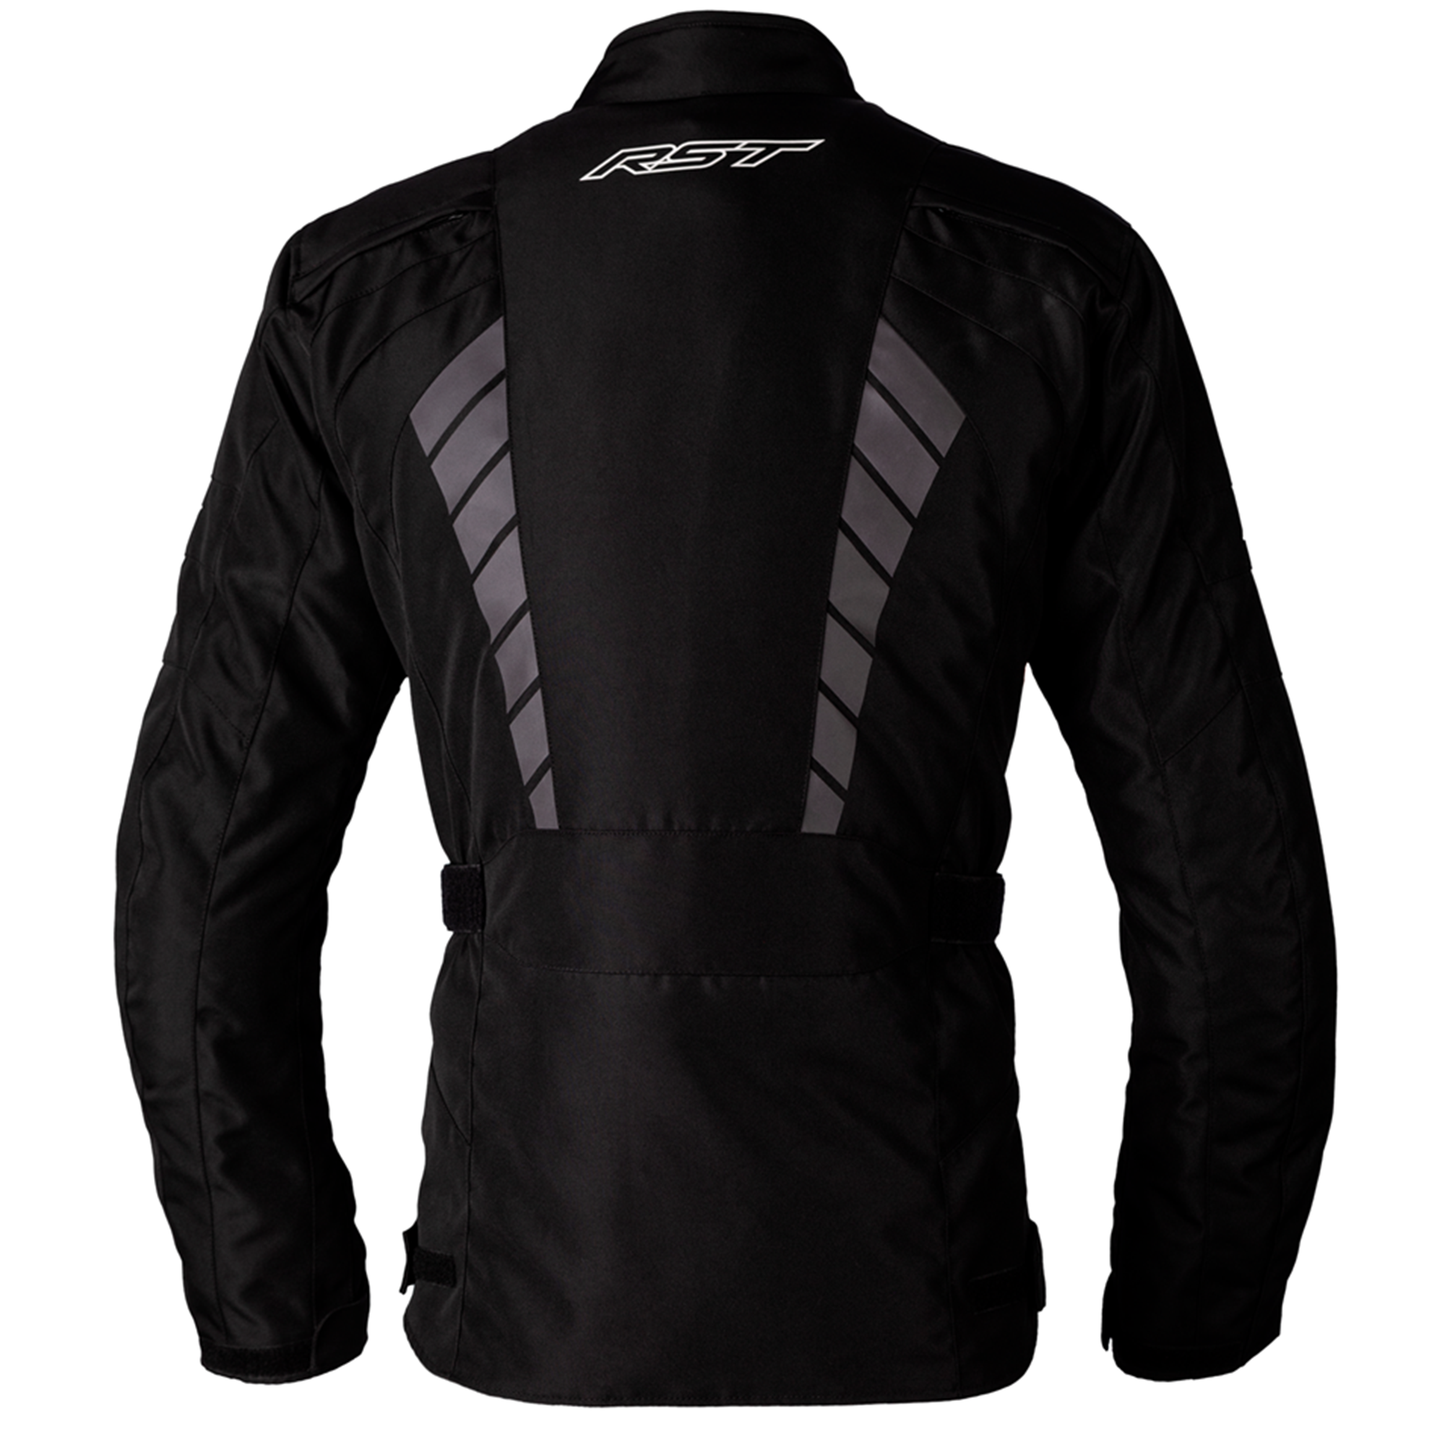 RST Alpha 5 Textile Jacket - Black